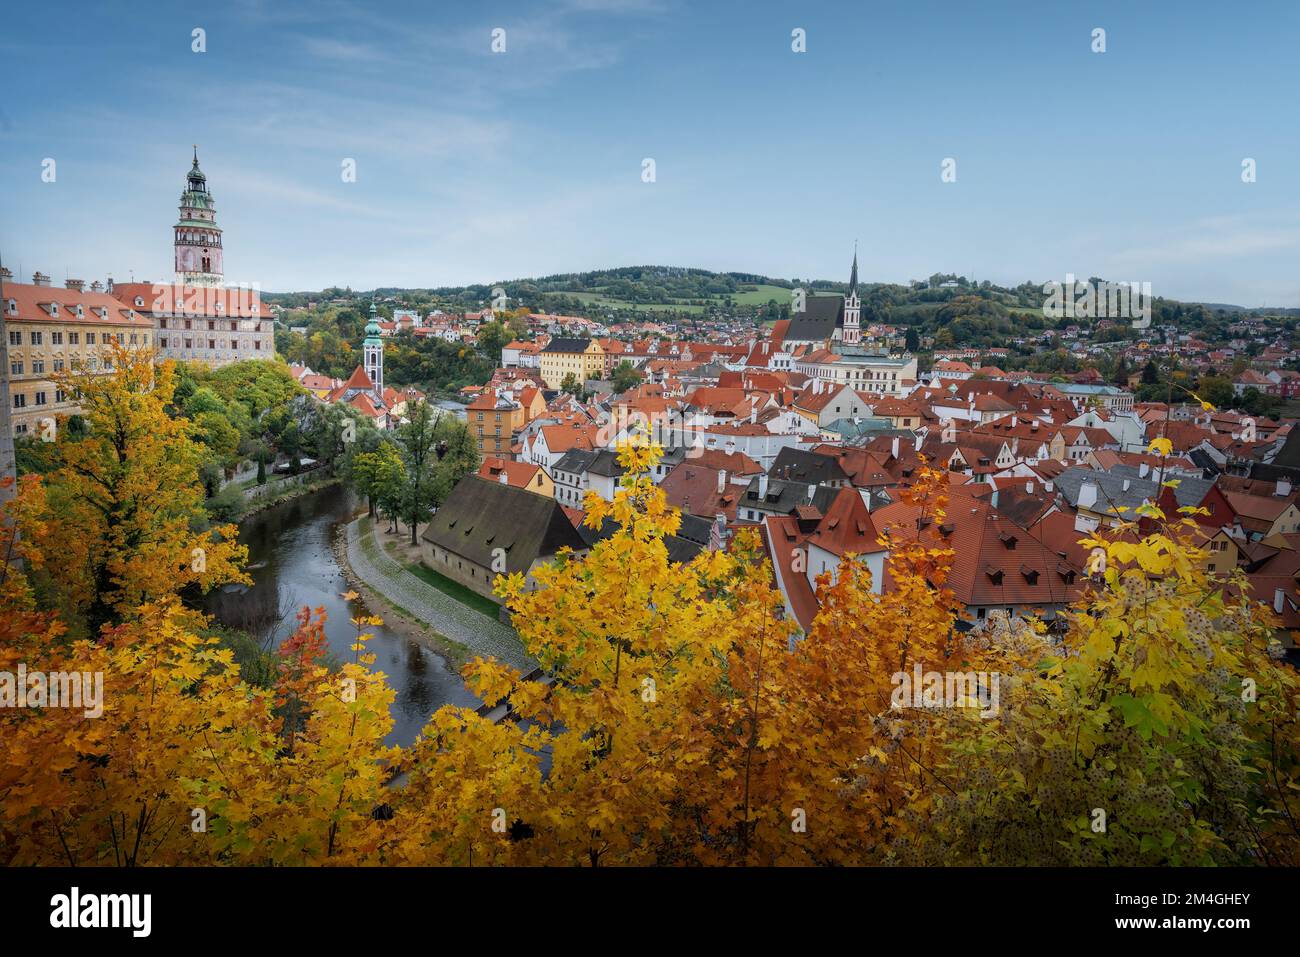 Blick aus der Vogelperspektive auf Cesky Krumlov mit Schloss, Kirche des Heiligen Veitses während der Herbstsaison - Cesky Krumlov, Tschechische Republik Stockfoto